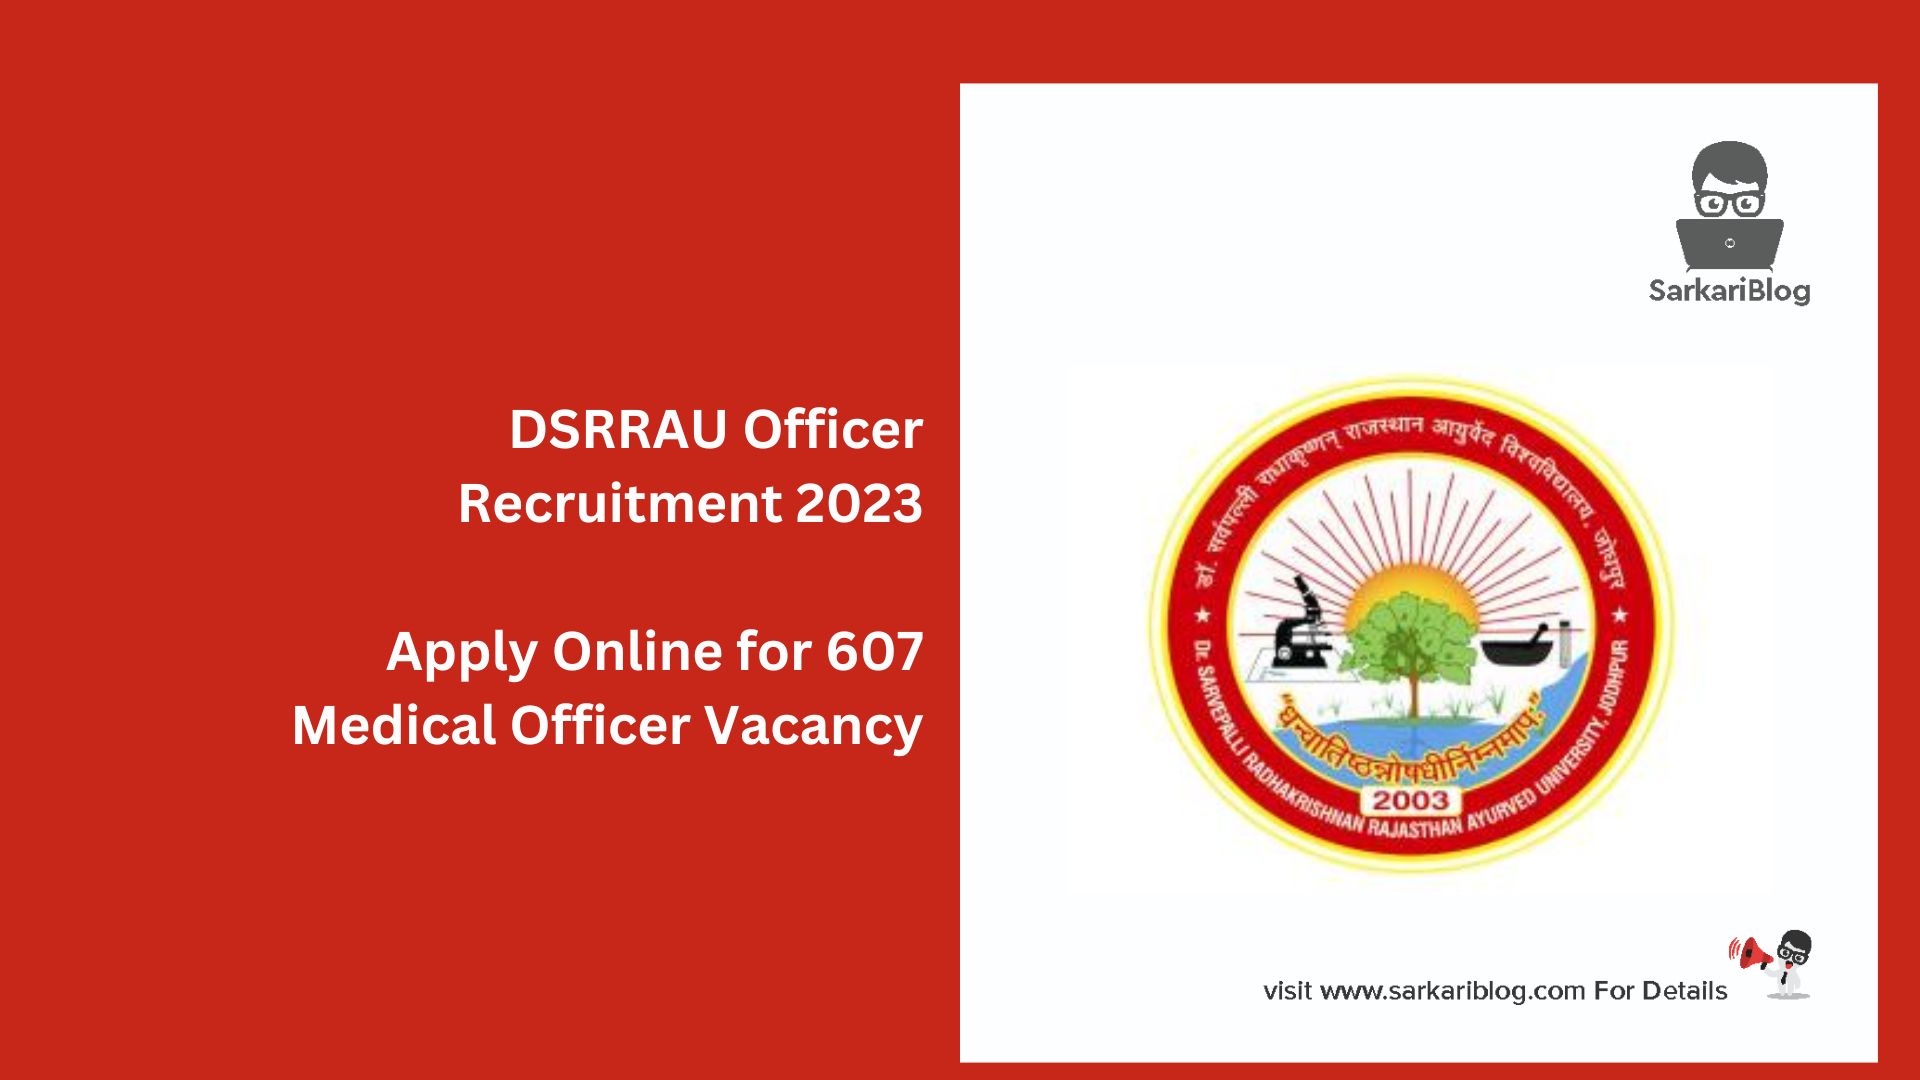 DSRRAU Officer Recruitment 2023